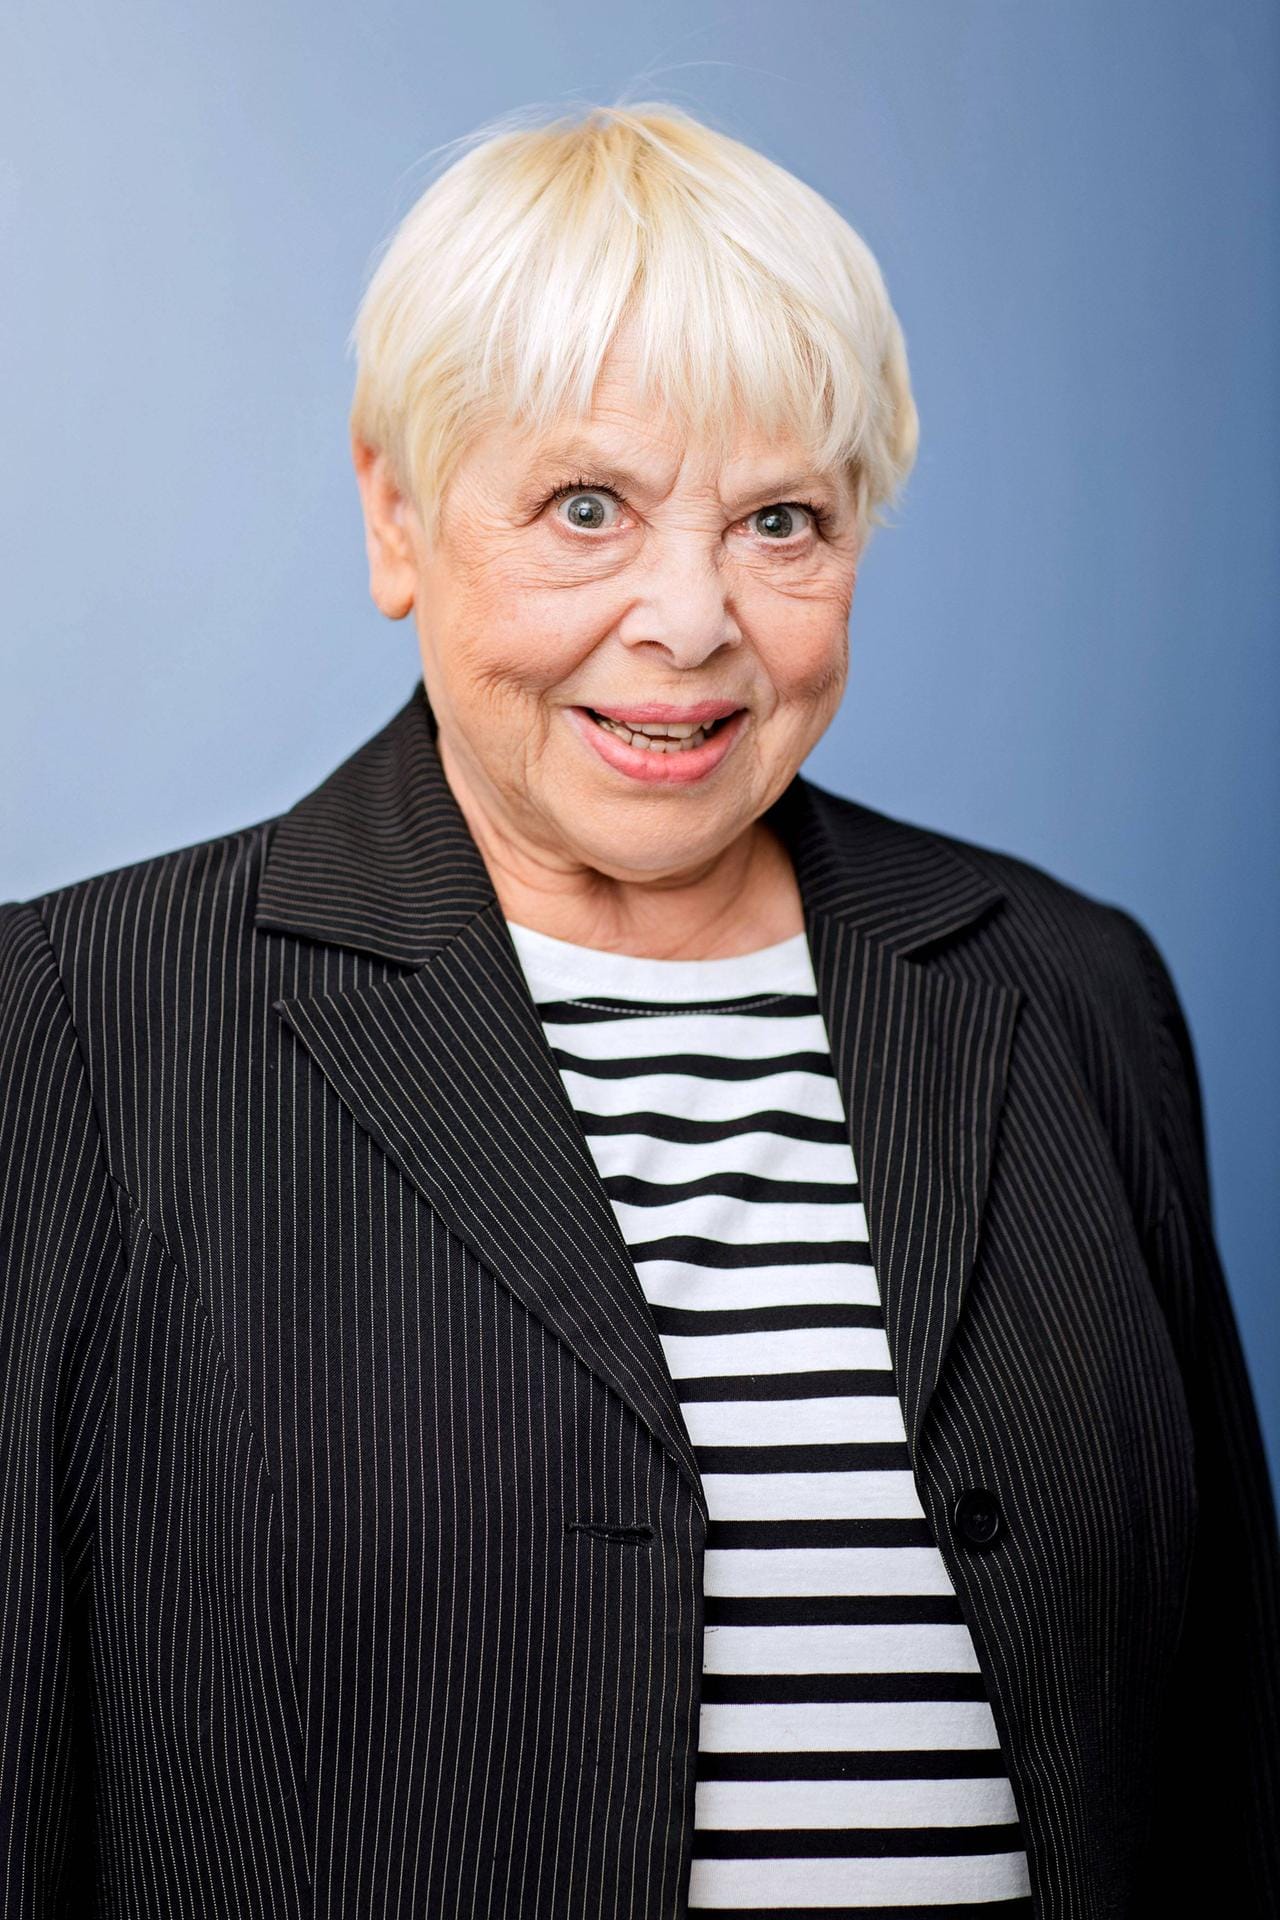 Ursula Staack: Die Schauspielerin, die auch aus der Sendung "Löwenzahn" bekannt ist, erhielt 2018 die Diagnose Parkinson.